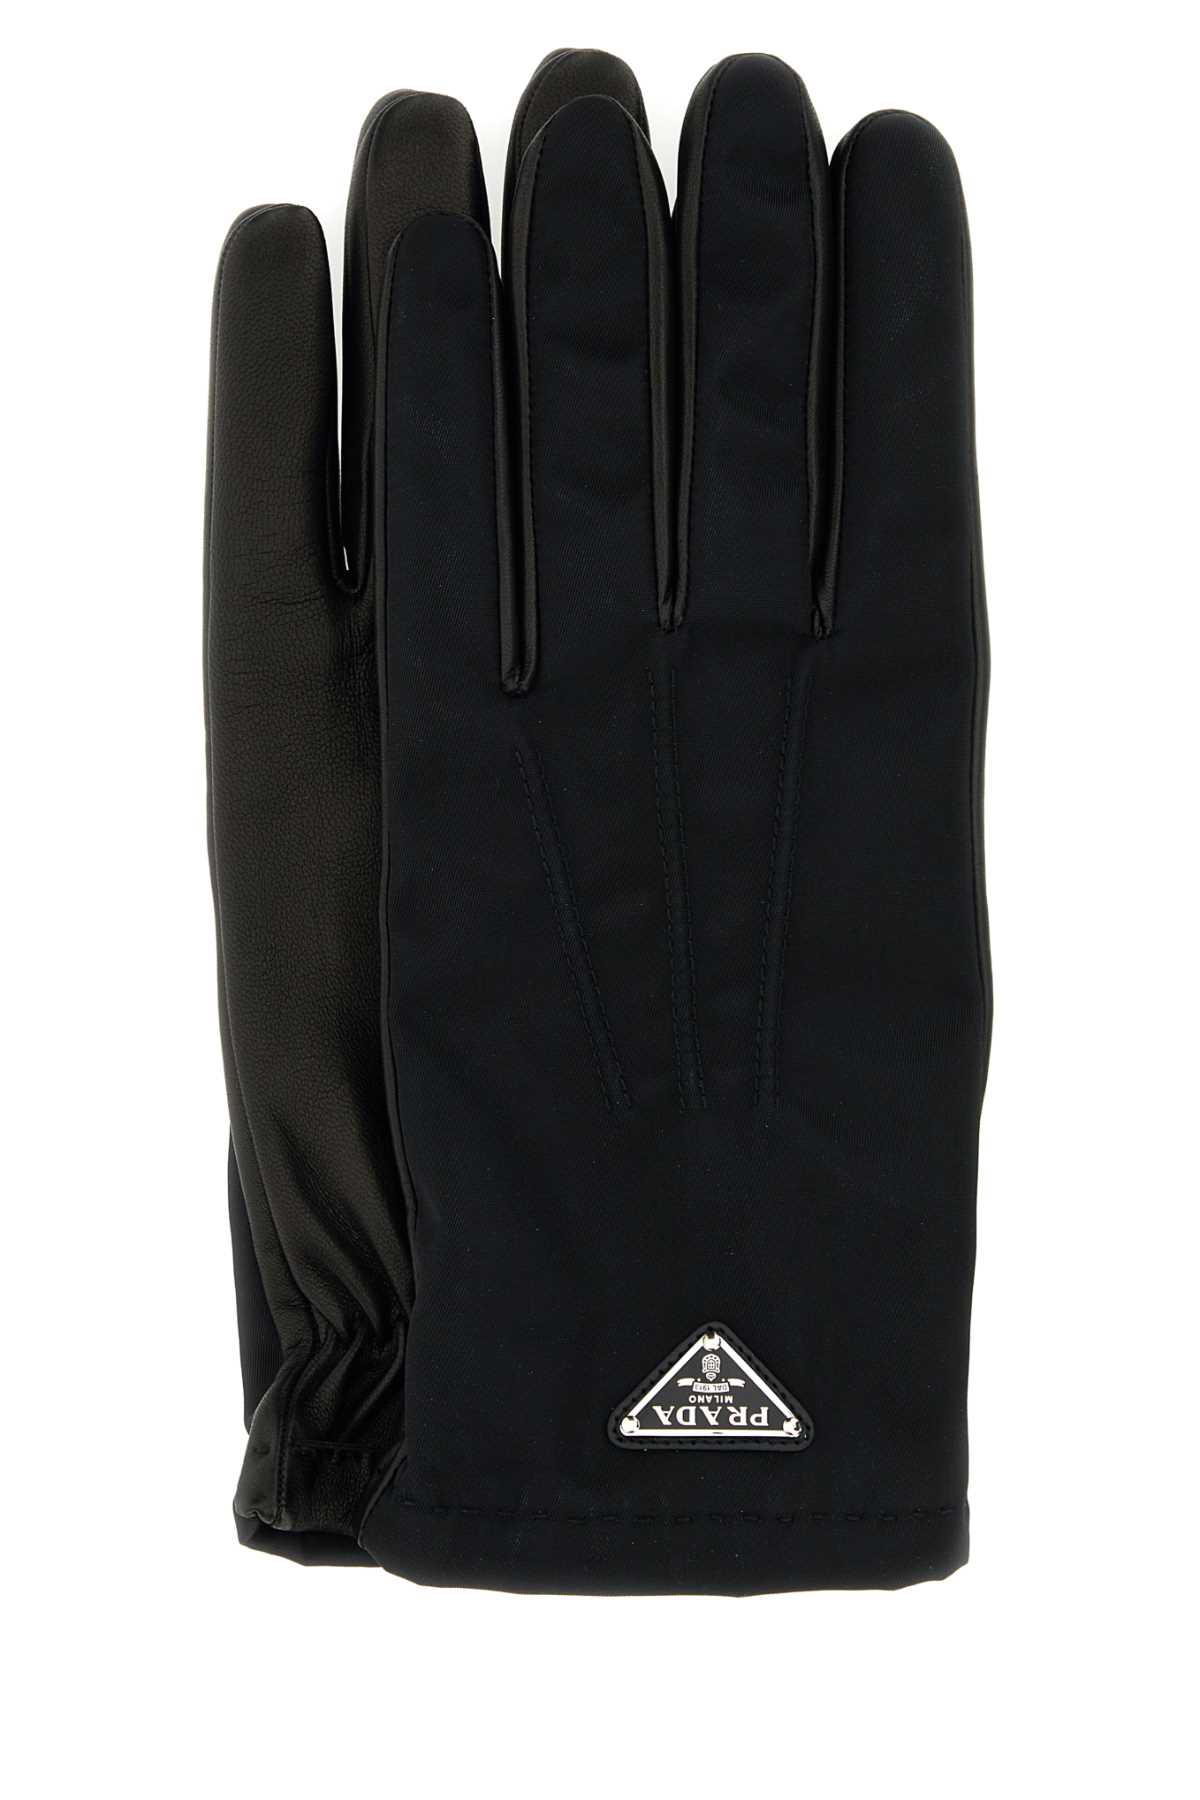 Prada Black Nylon And Nappa Leather Gloves In Nero